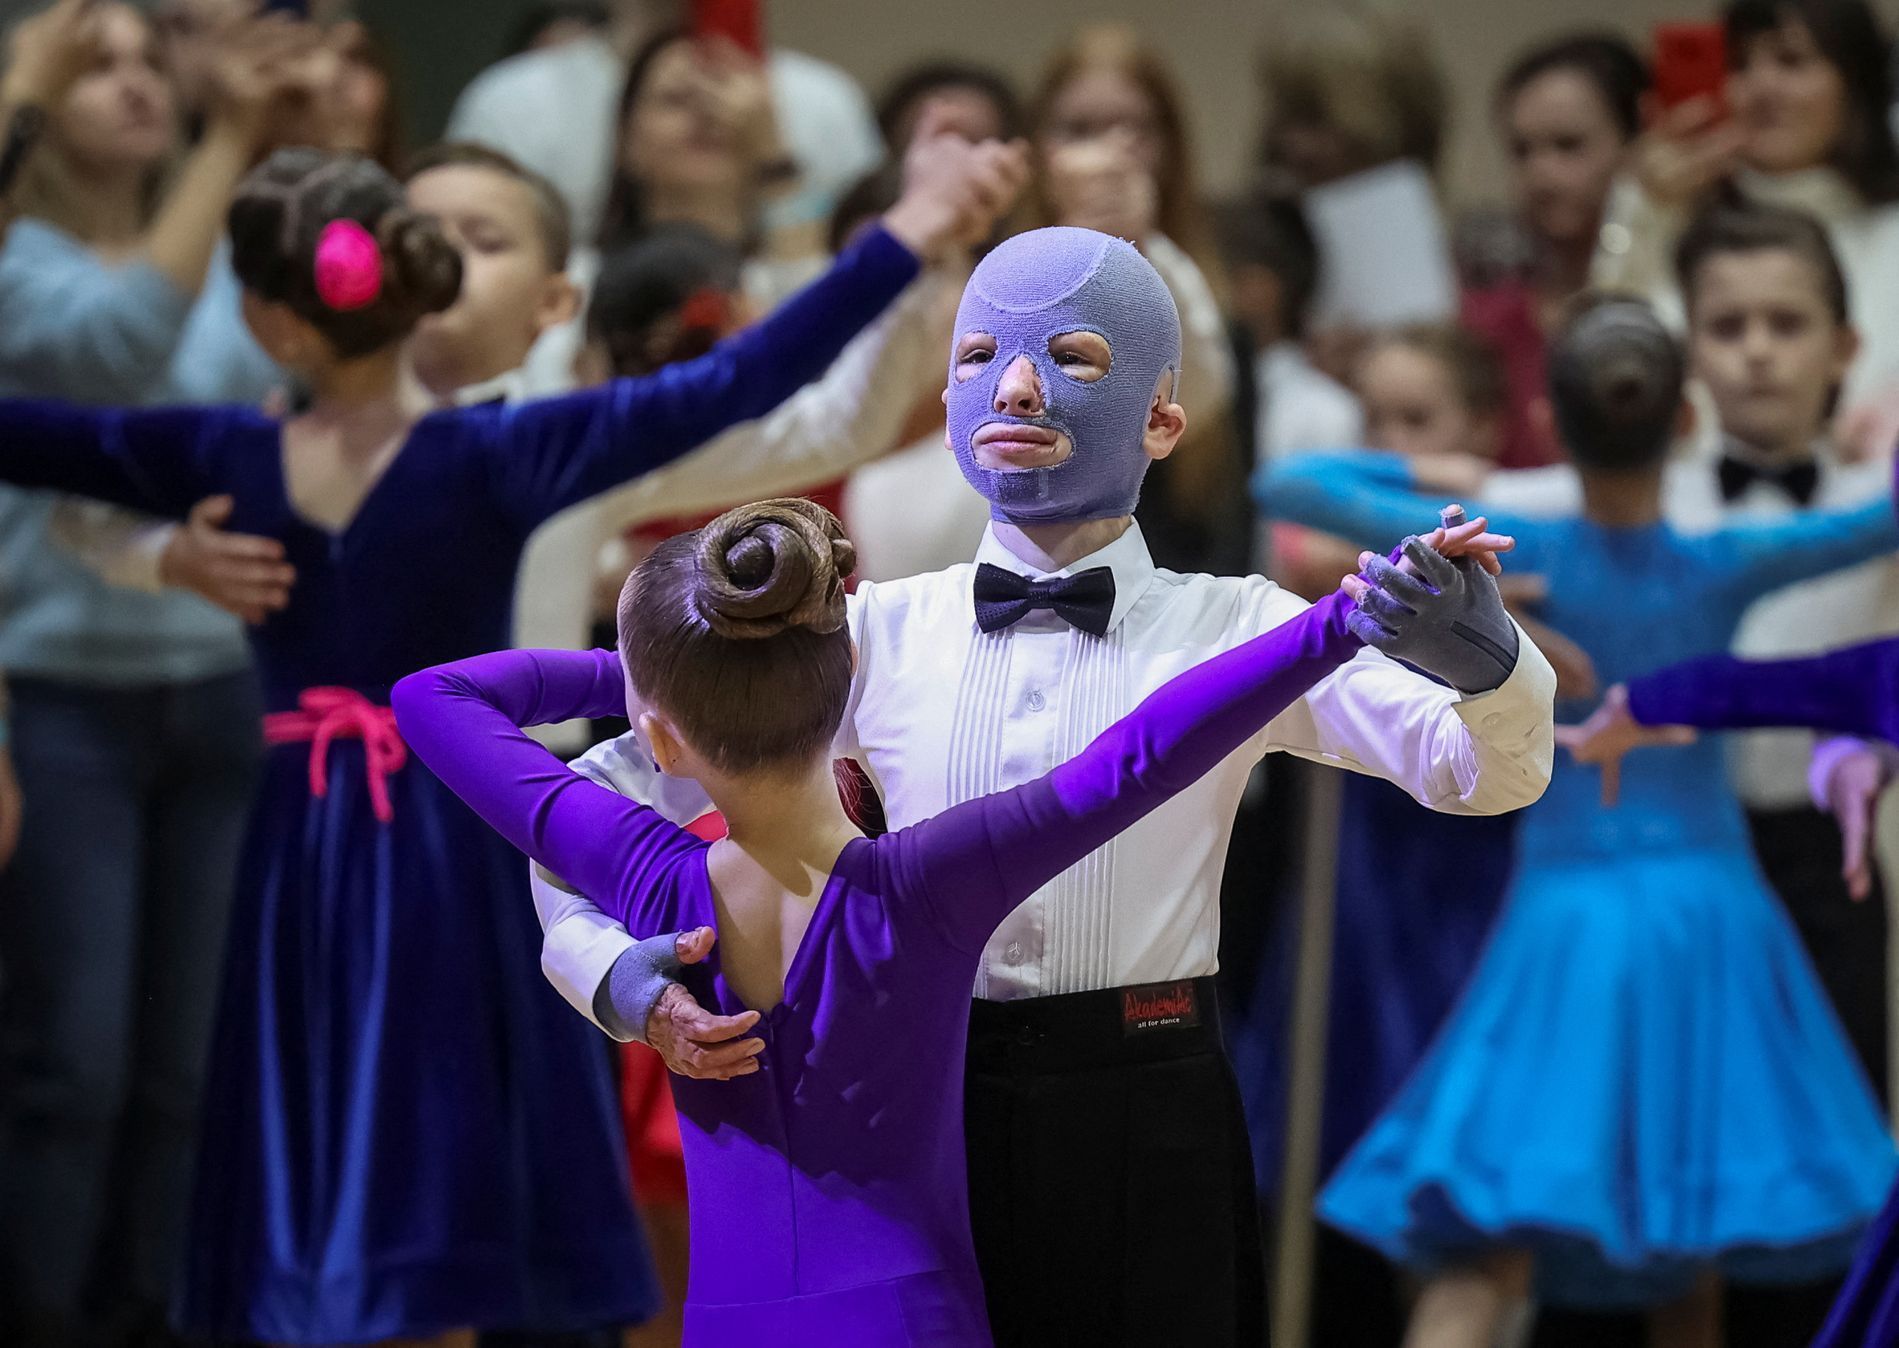 Roman Oleksiv při taneční soutěži ve Lvově.